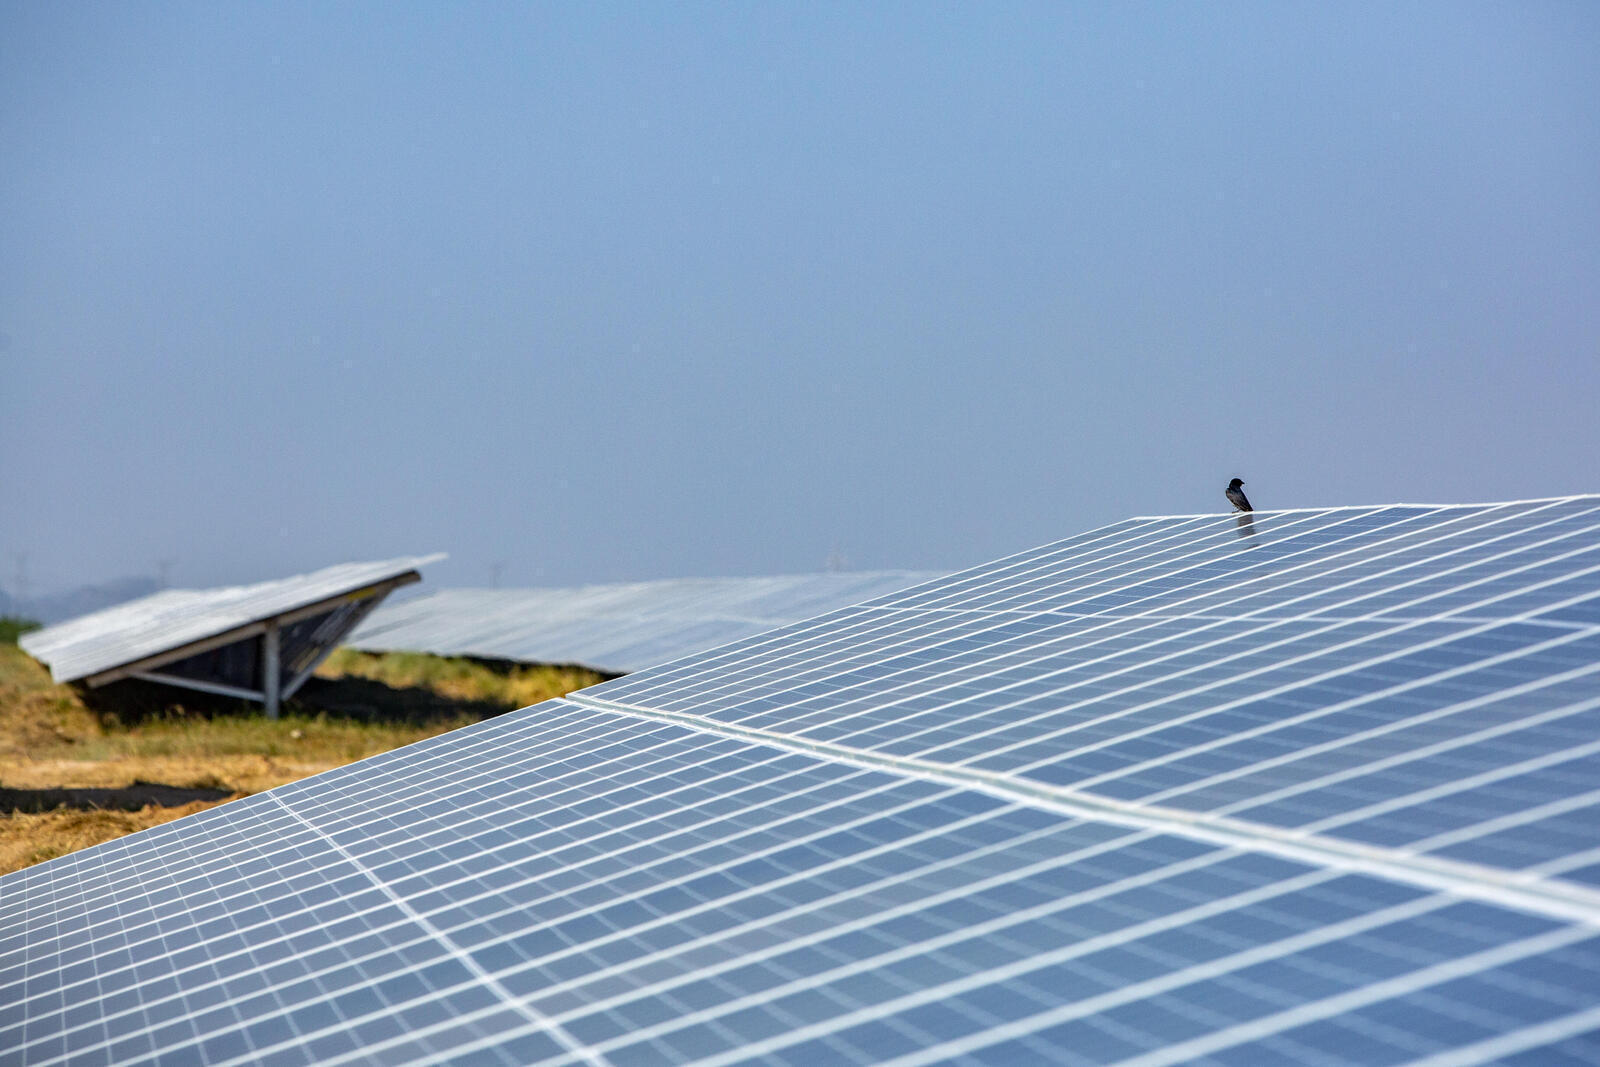 Vue d'ensemble de la centrale solaire - Centrale solaire de Khirasara, Gujarat, Inde (panneaux solaires, panneaux photovoltaiques, Adani Green Energy Limited, panneau photovoltaïque, ferme solaire, transition énergétique)